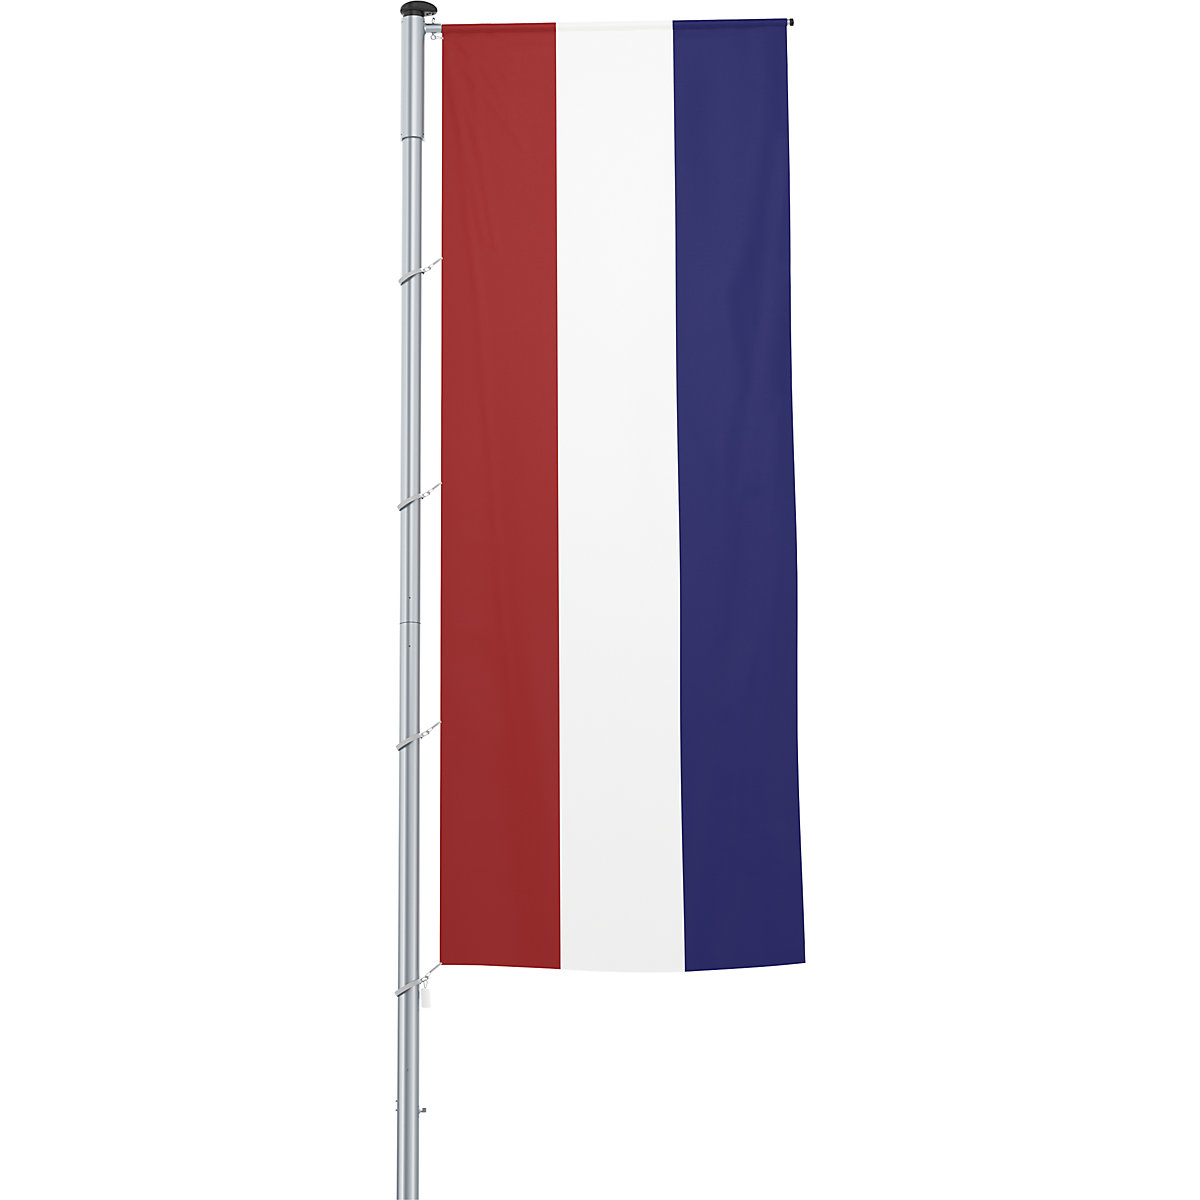 Mannus – Bandera con pluma/bandera del país, formato 1,2 x 3 m, Países Bajos